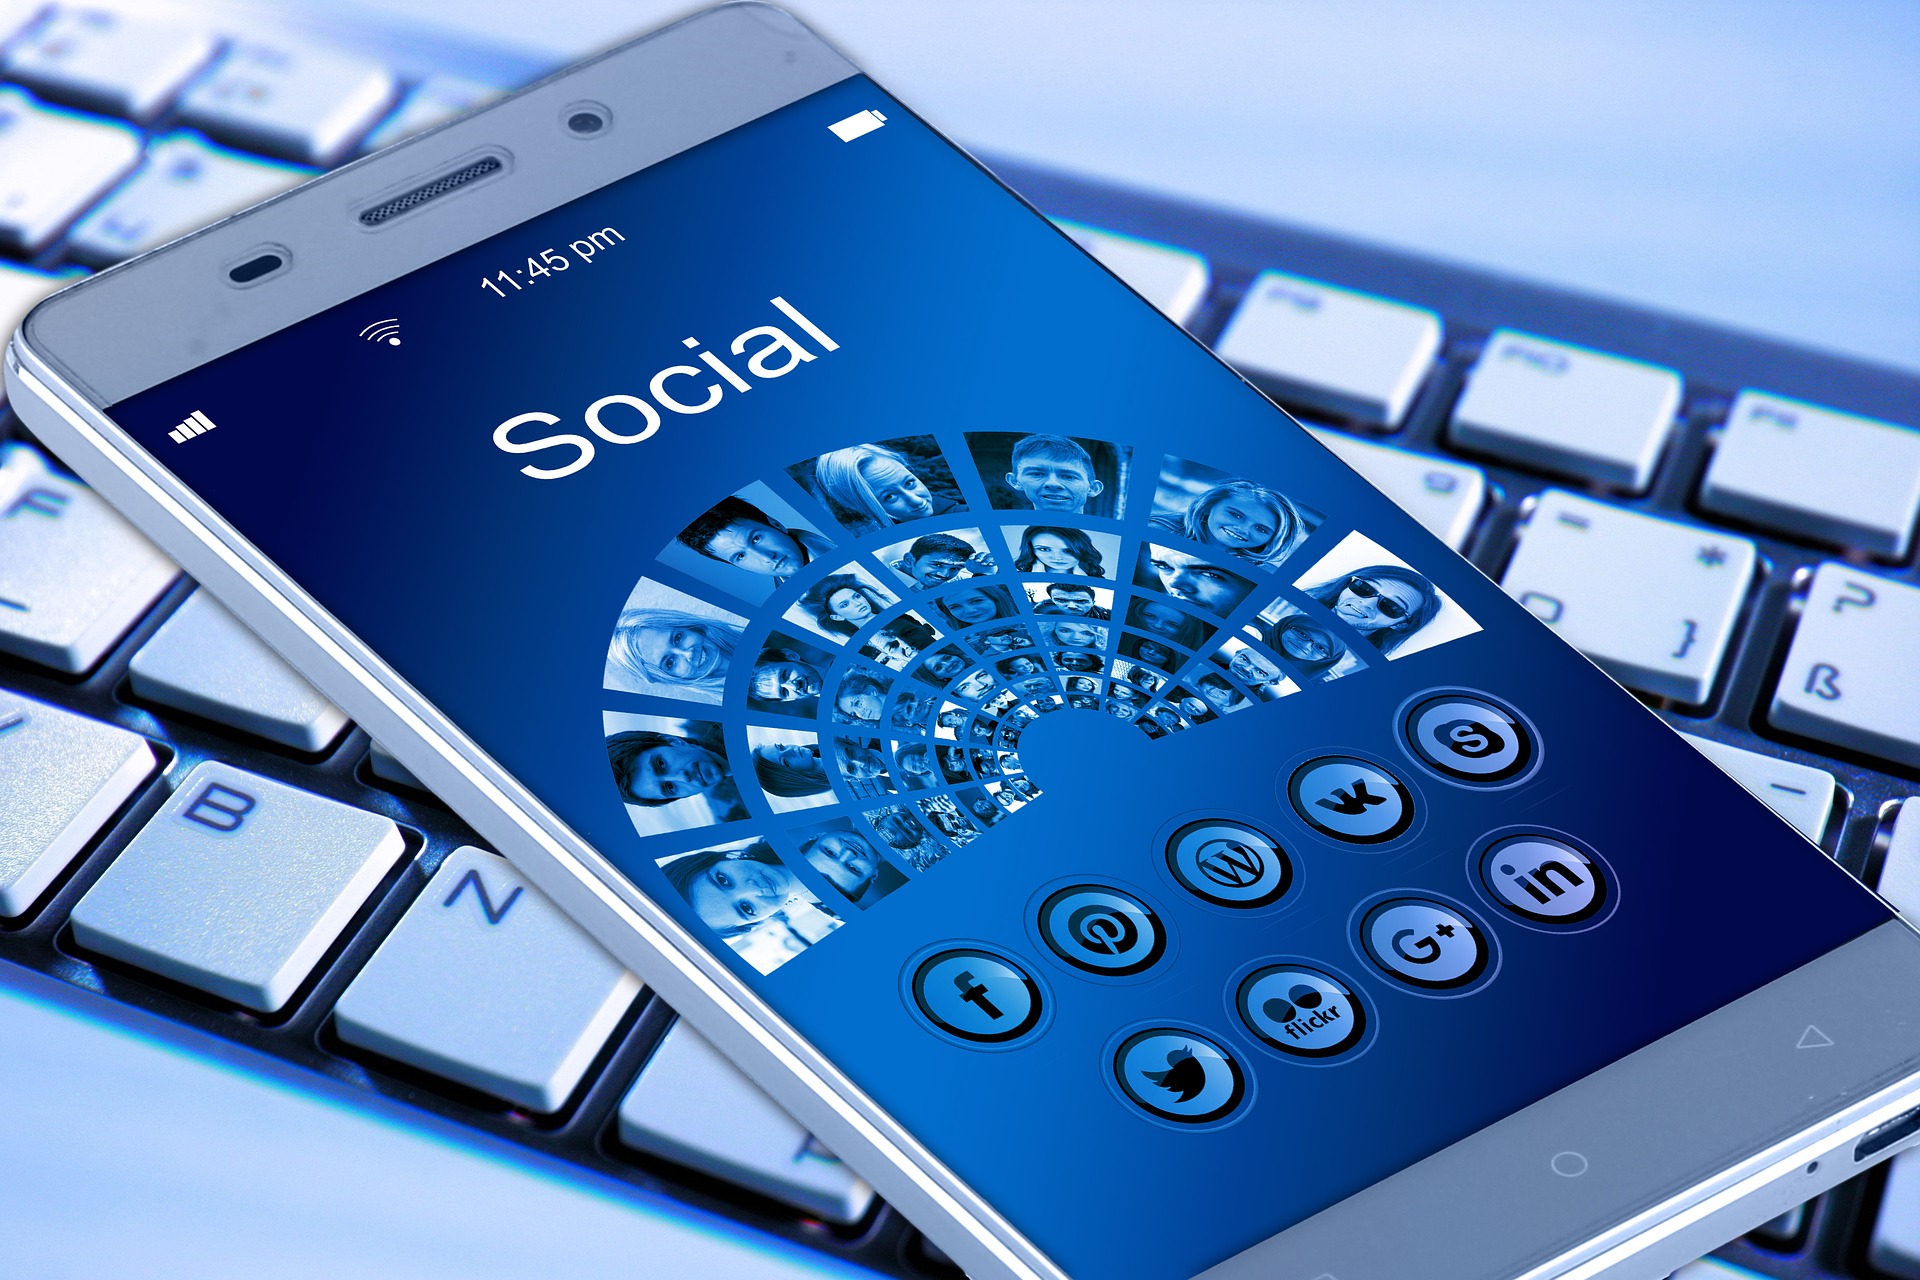 Ein Smartphone liegt auf einer Tastatur. Auf dem Bildschirm sind verschiedene Icons von sozialen Medien zu sehen.